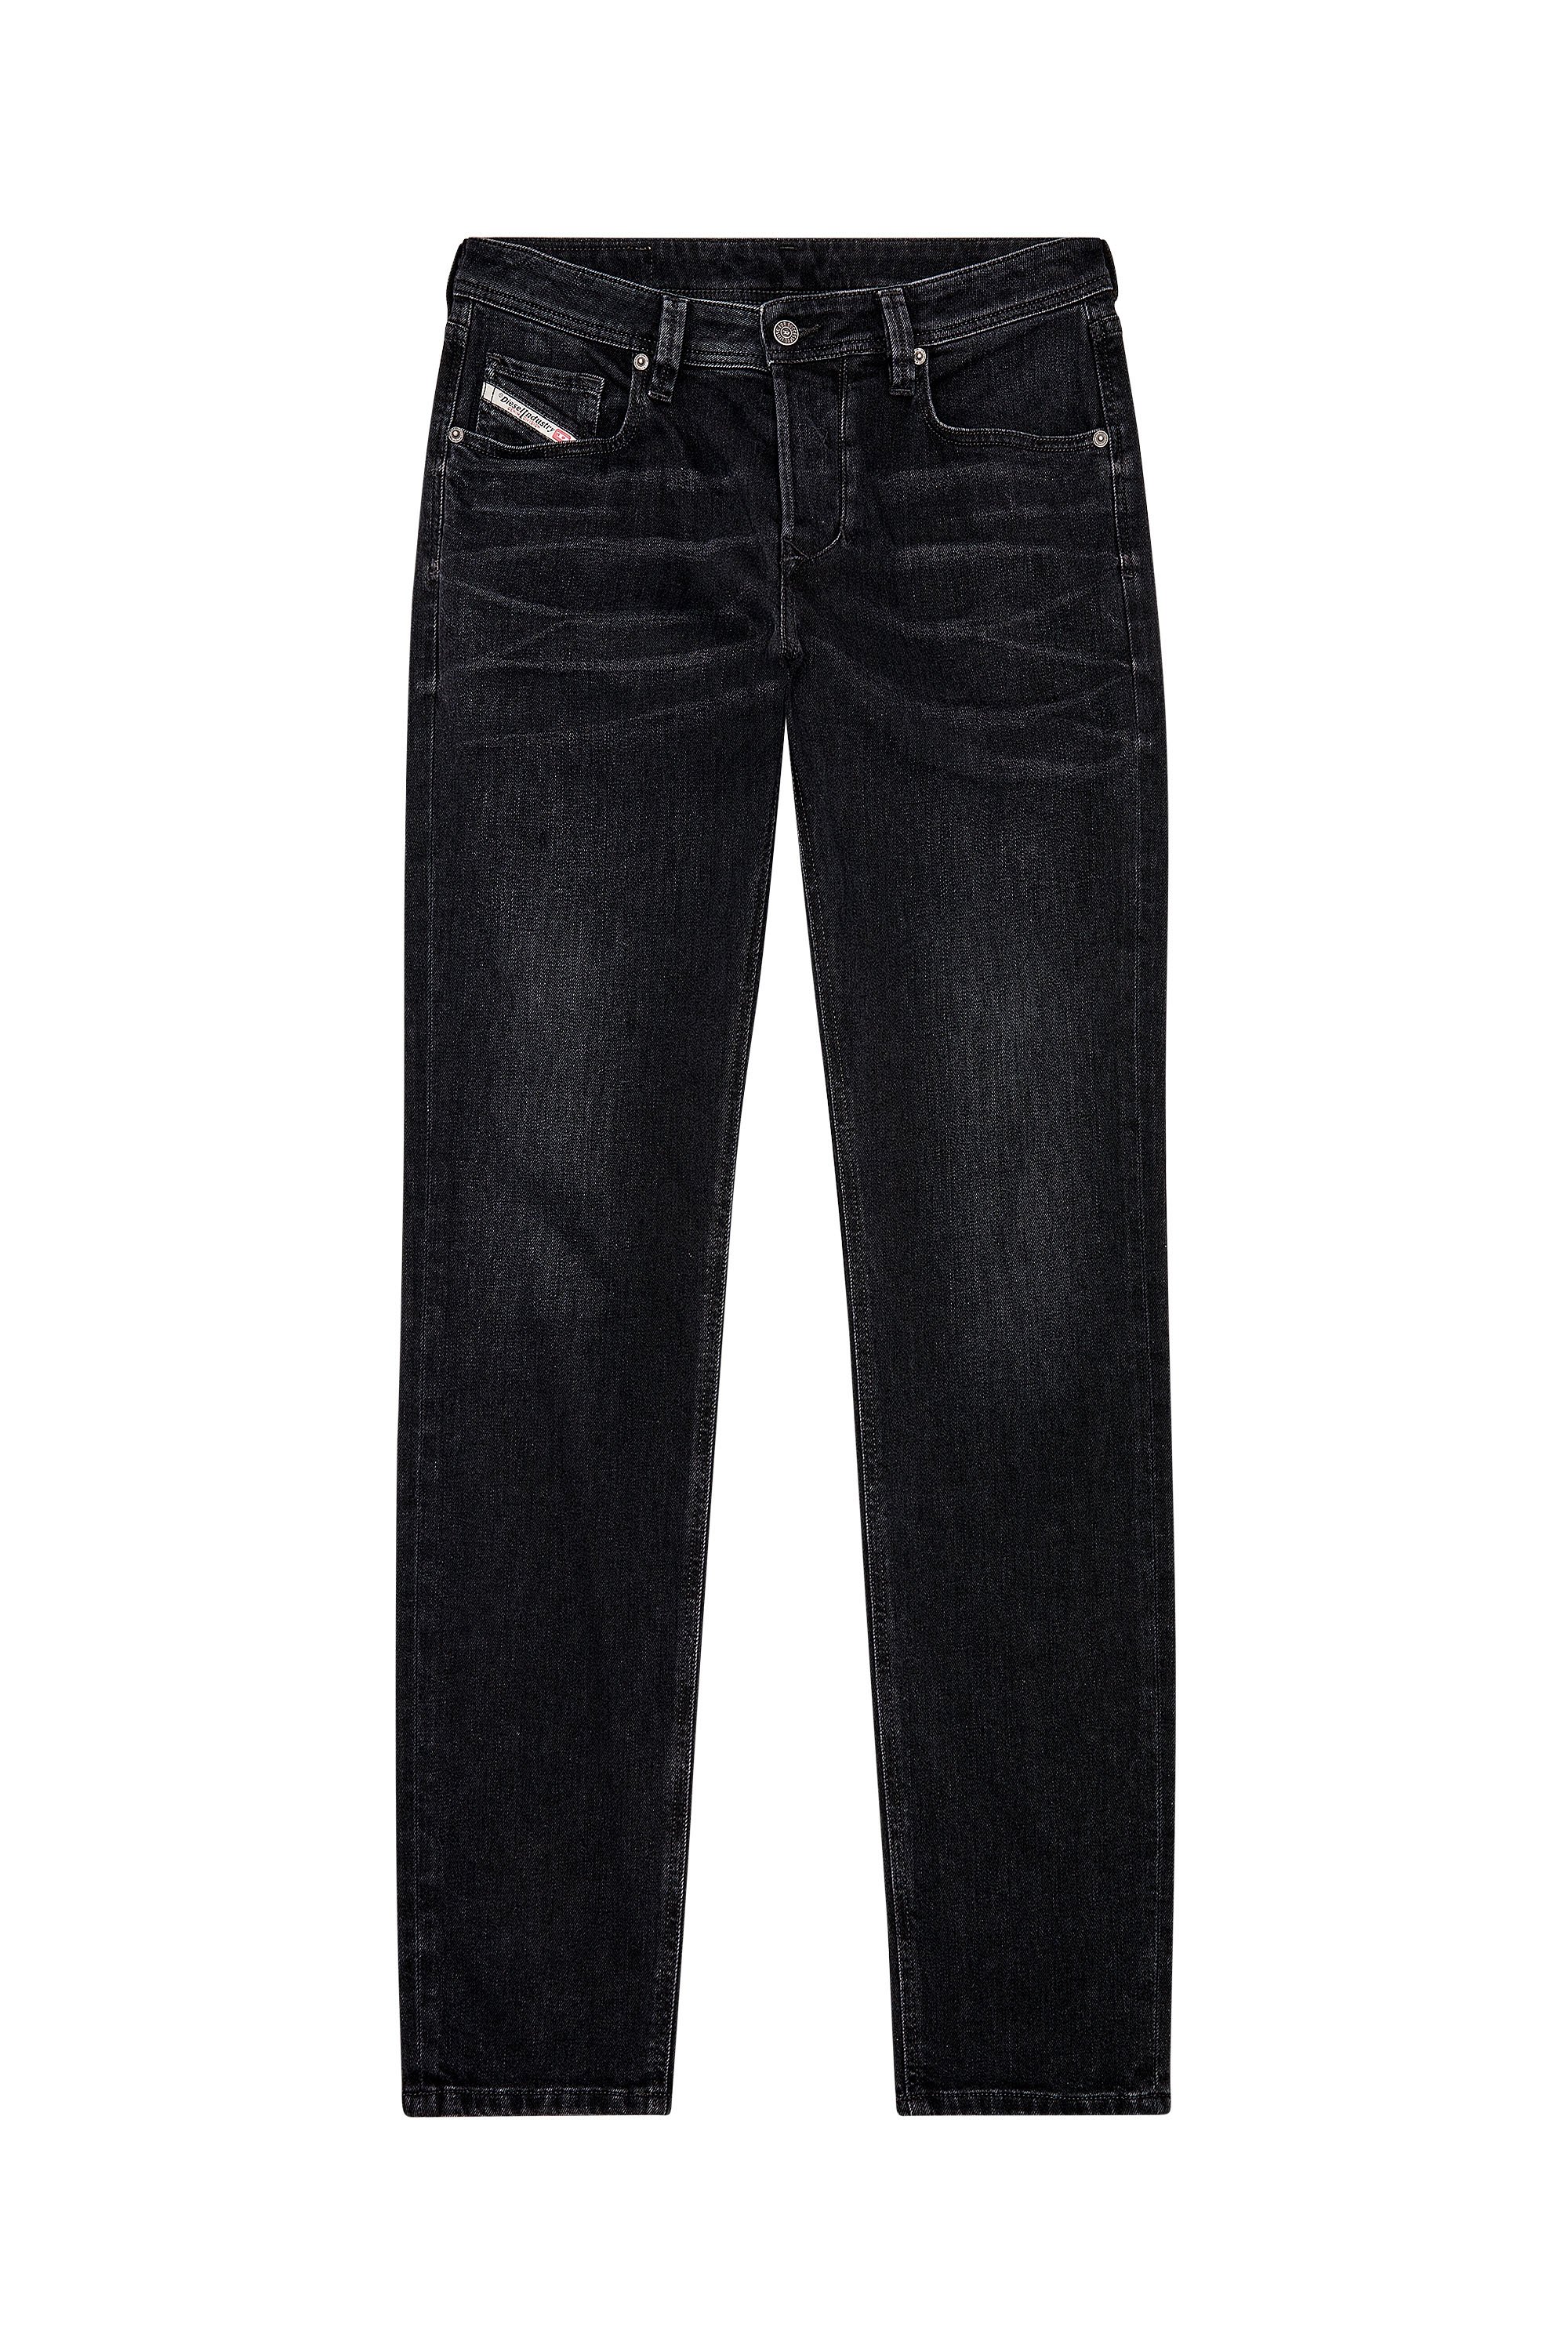 Diesel - Tapered Jeans 1986 Larkee-Beex 09D48, Black/Dark grey - Image 1